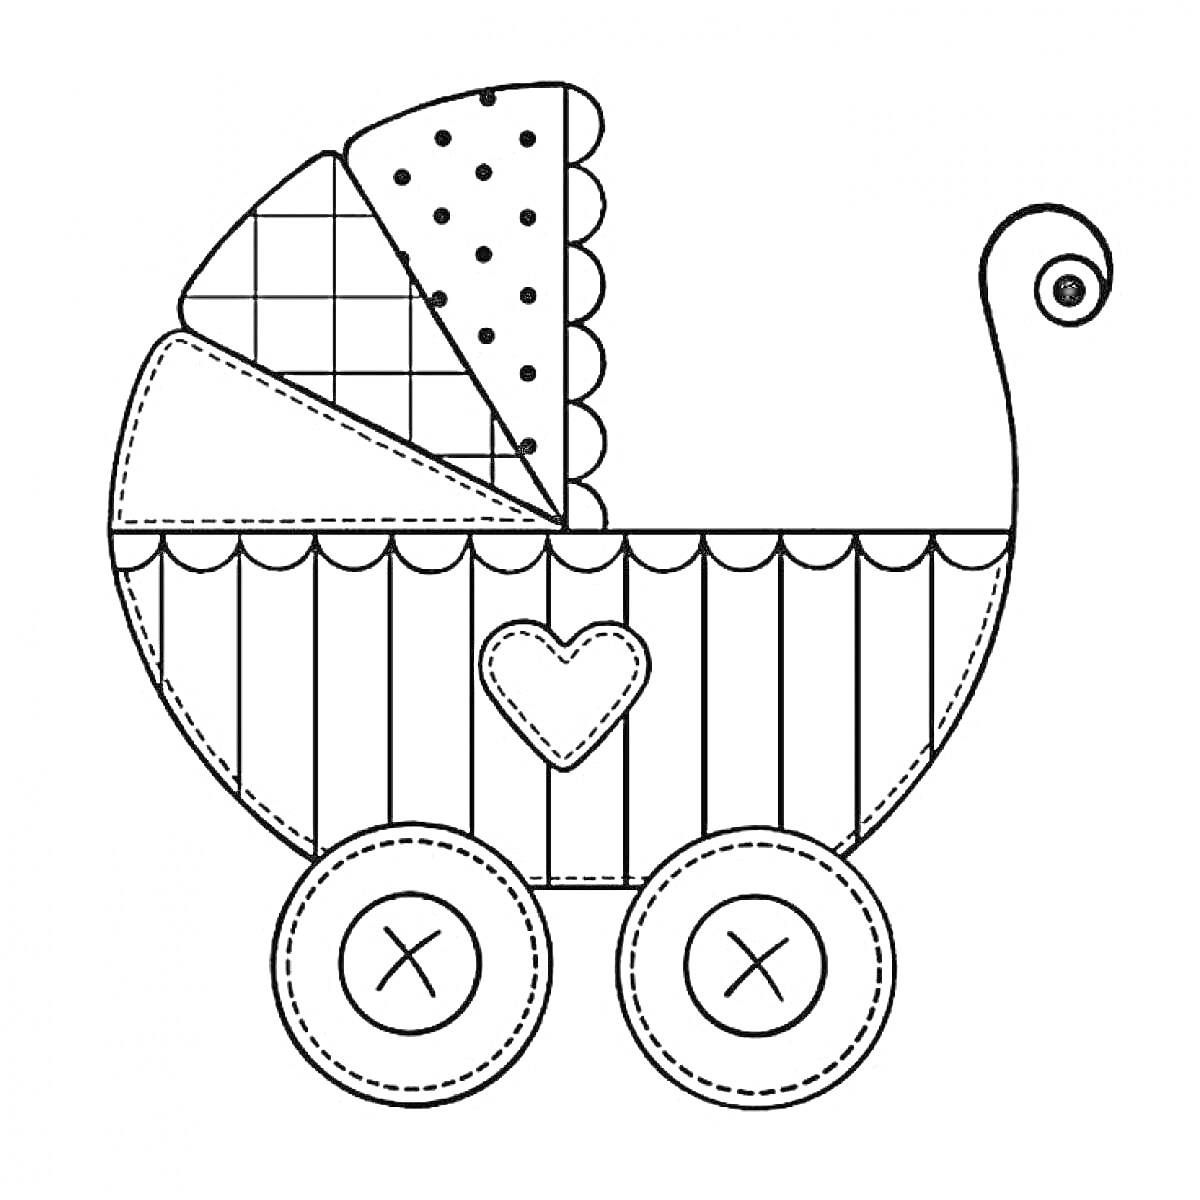 Раскраска Коляска с узорами: зонт с полосками и горошком, корзина с вертикальными полосами, сердечко, кнопки на колесах, завиток на ручке